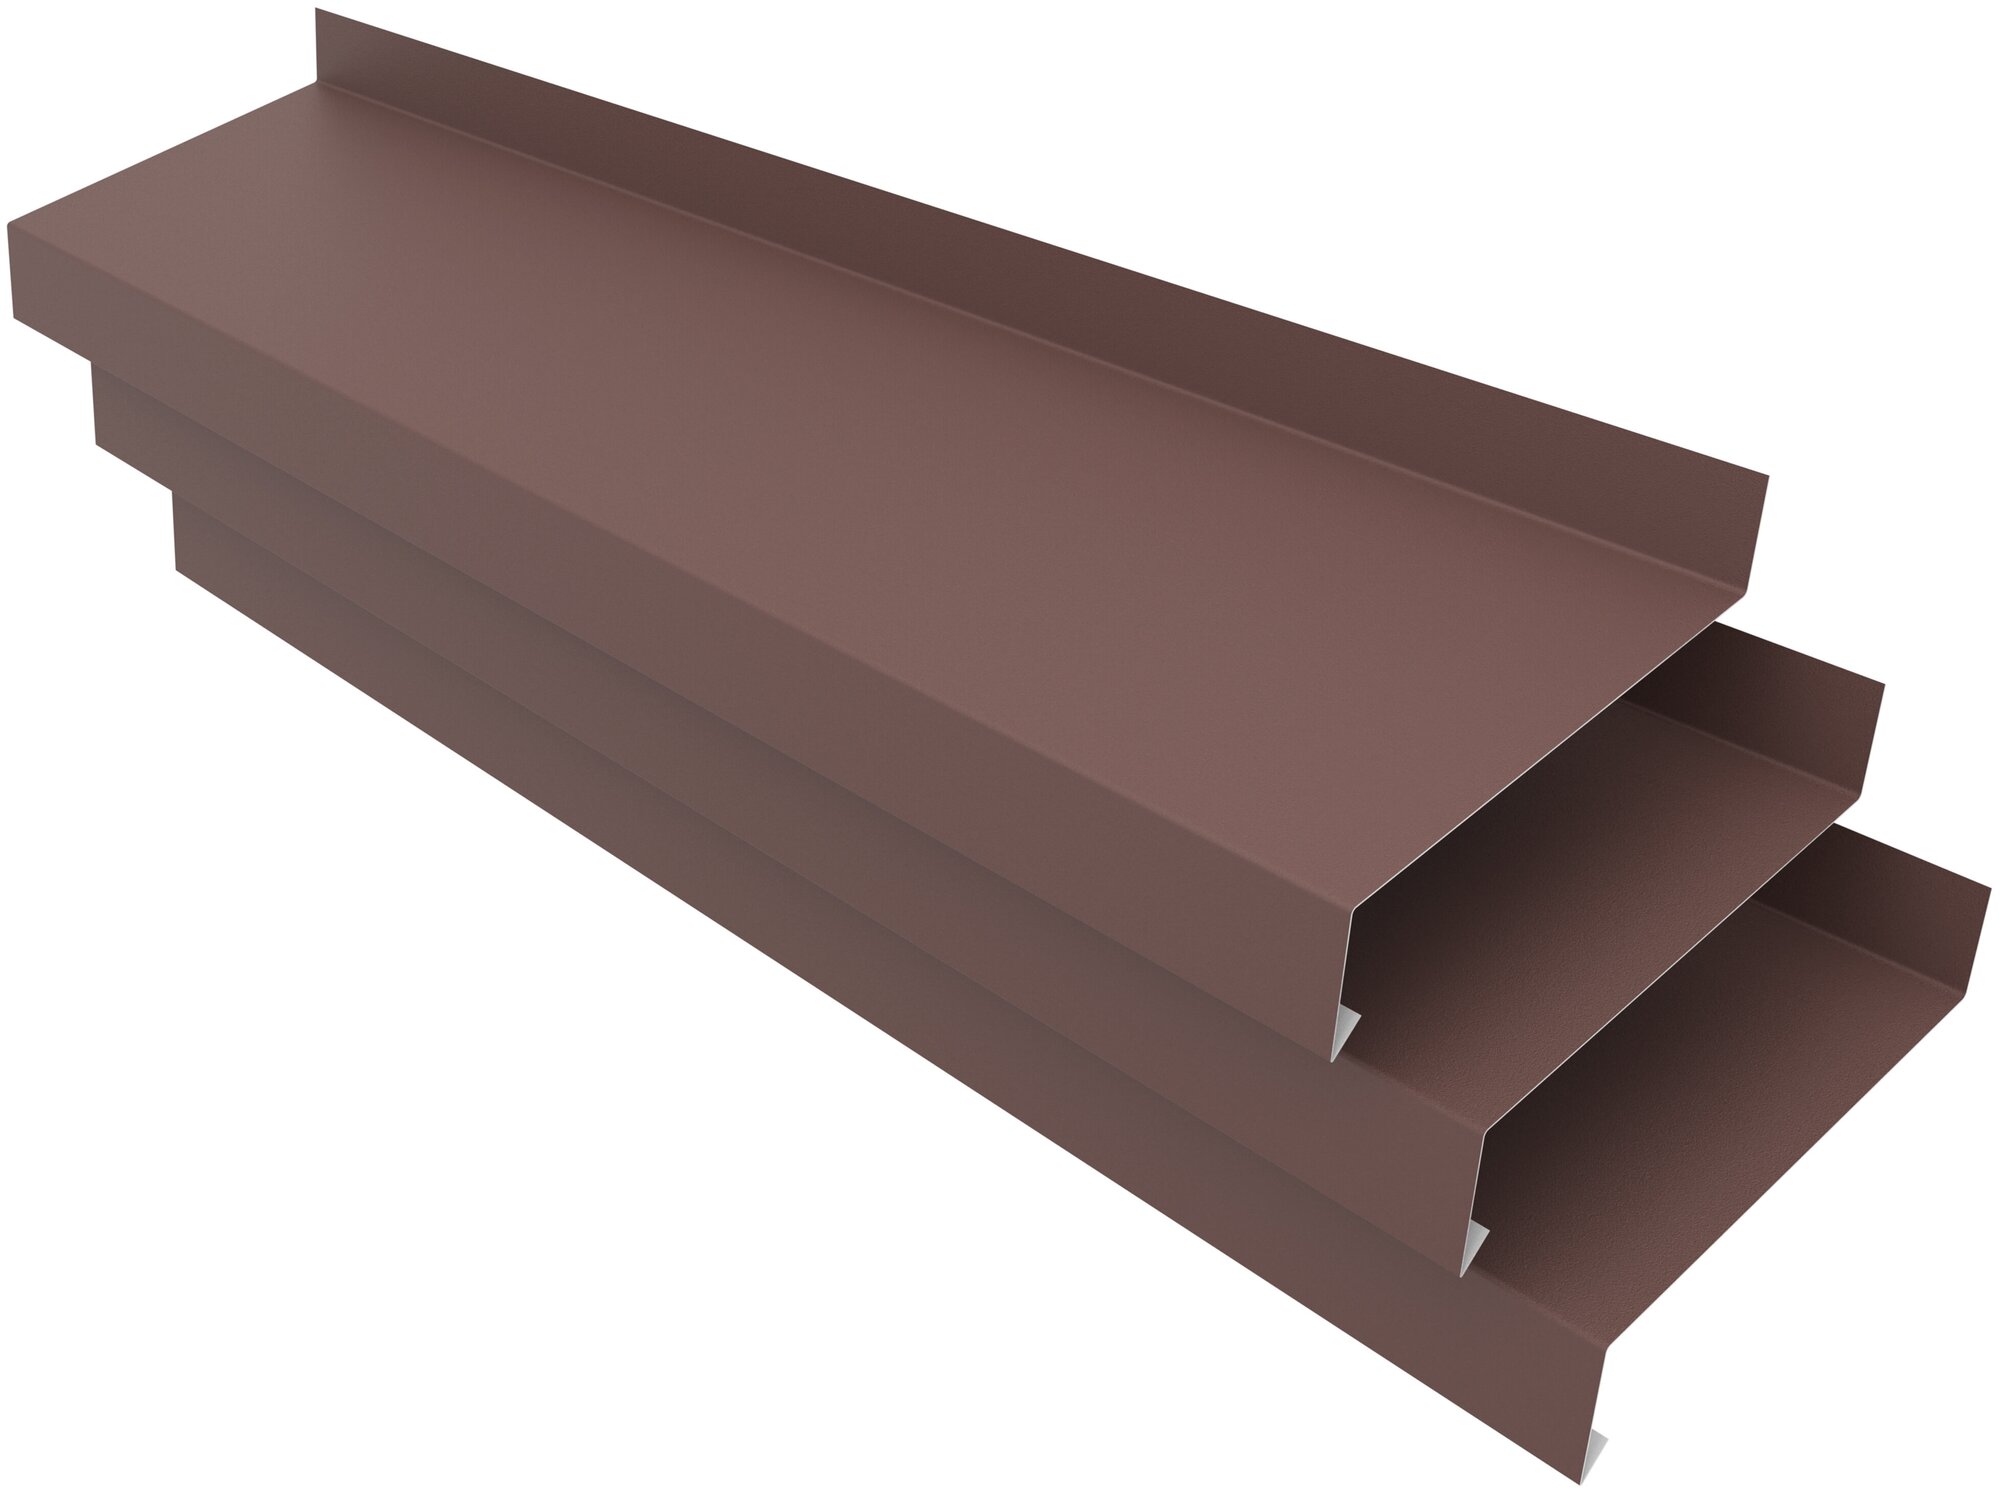 Отлив оконный ширина полки 170мм/ отлив для окна / планка отлива, цвет коричневый(RAL 8017) Длина 1,5м, 3 штуки в комплекте - фотография № 1